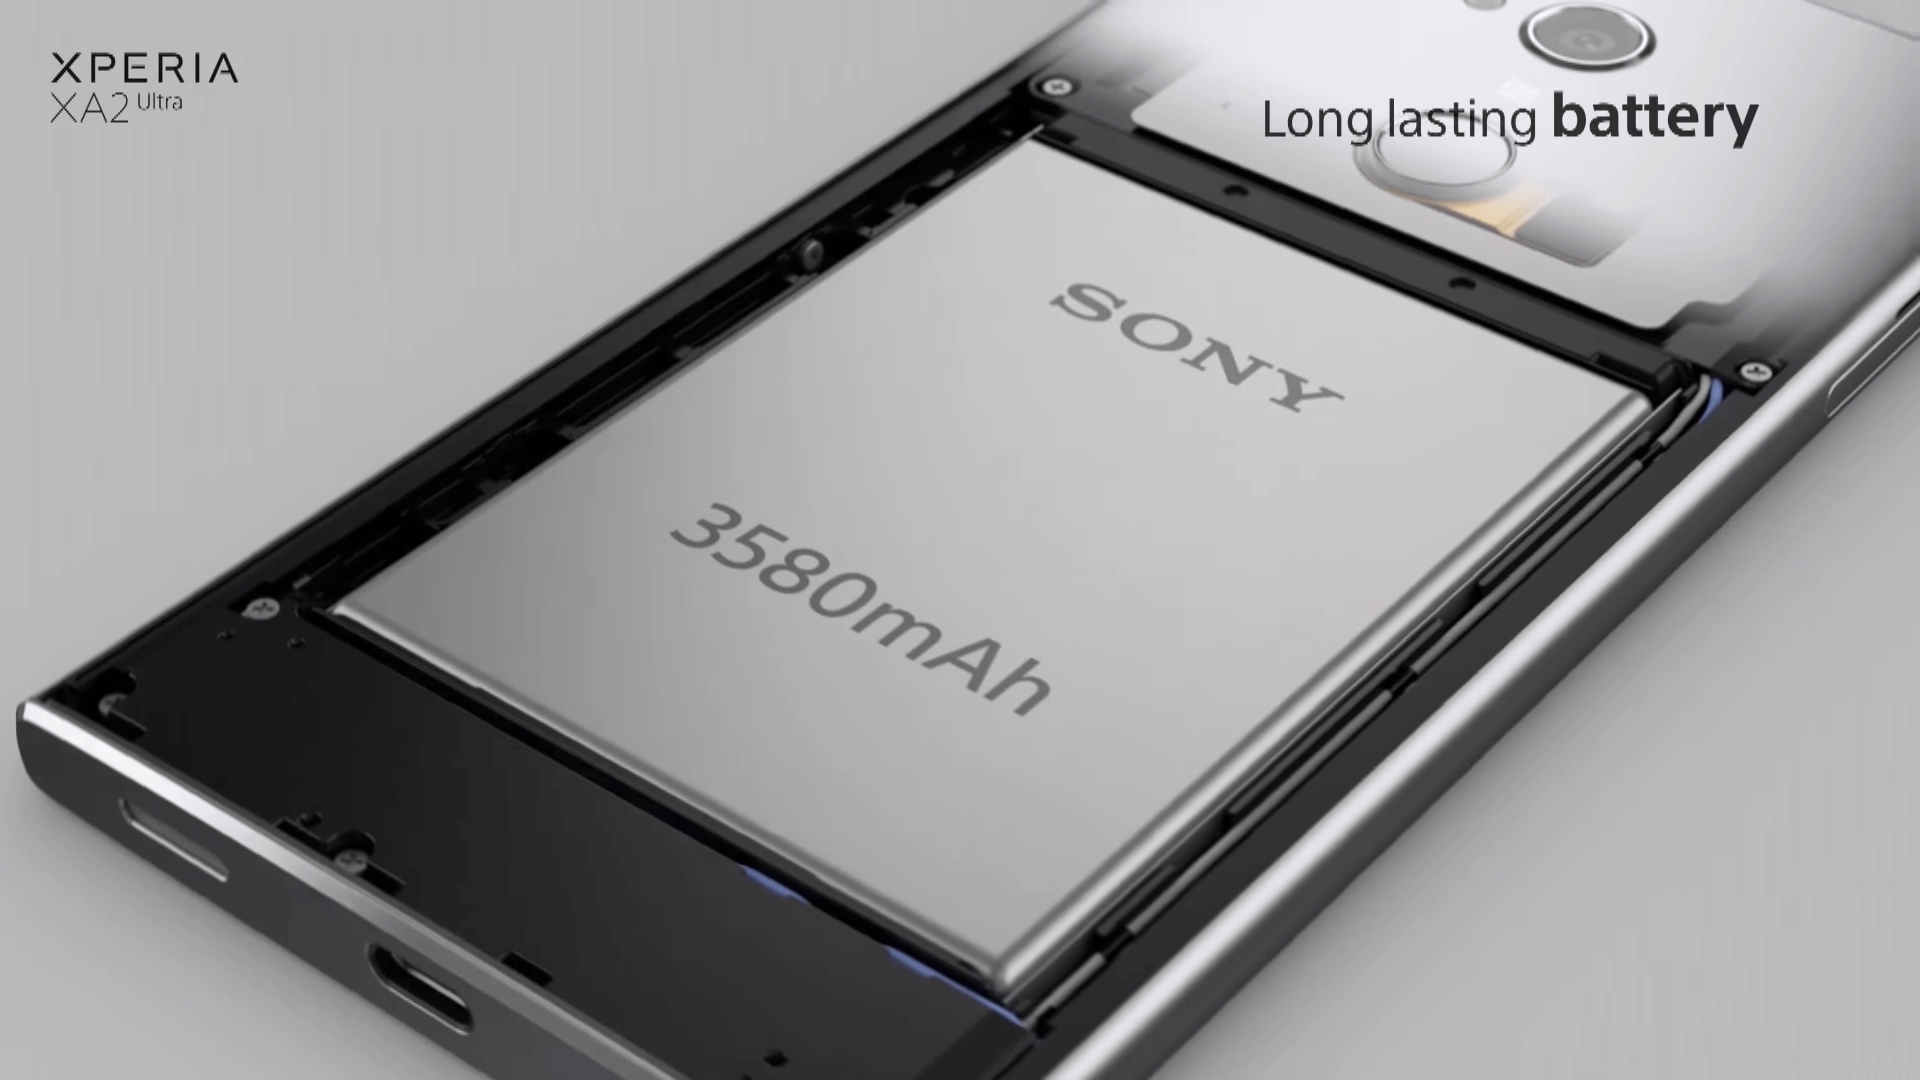 Sony xperia xa2 ultra